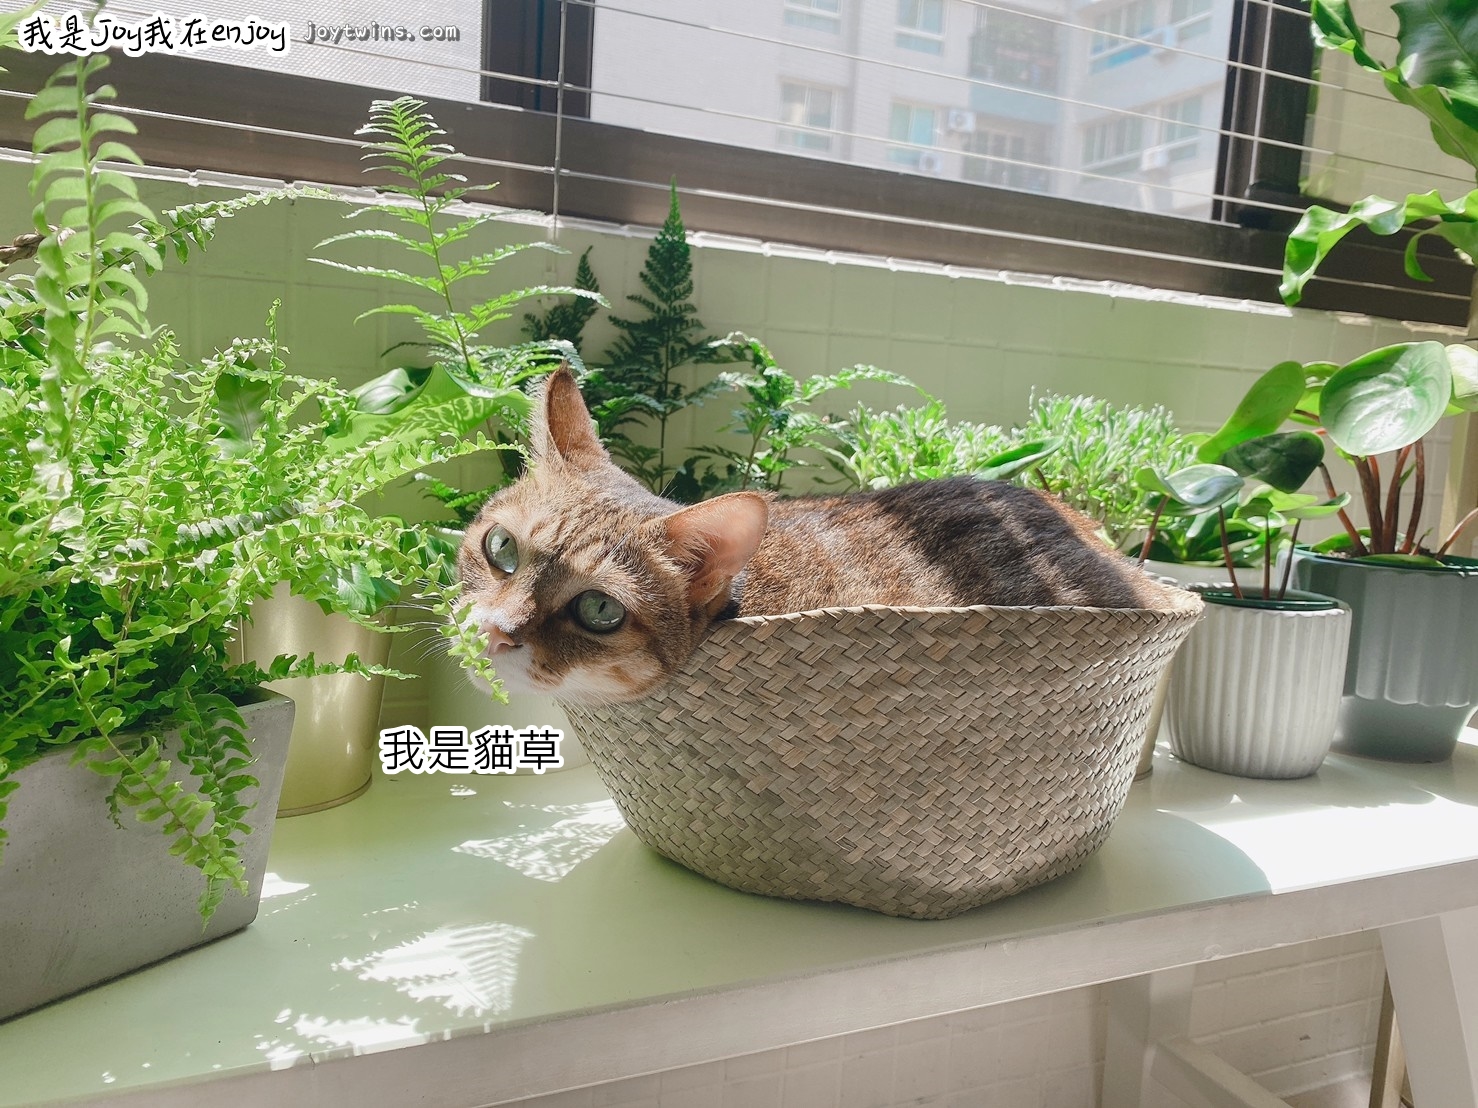 對貓無毒的植物室內盆栽淨化空氣與居家生活美感就在每個角落 綠植正夯 我是joy我在enjoy